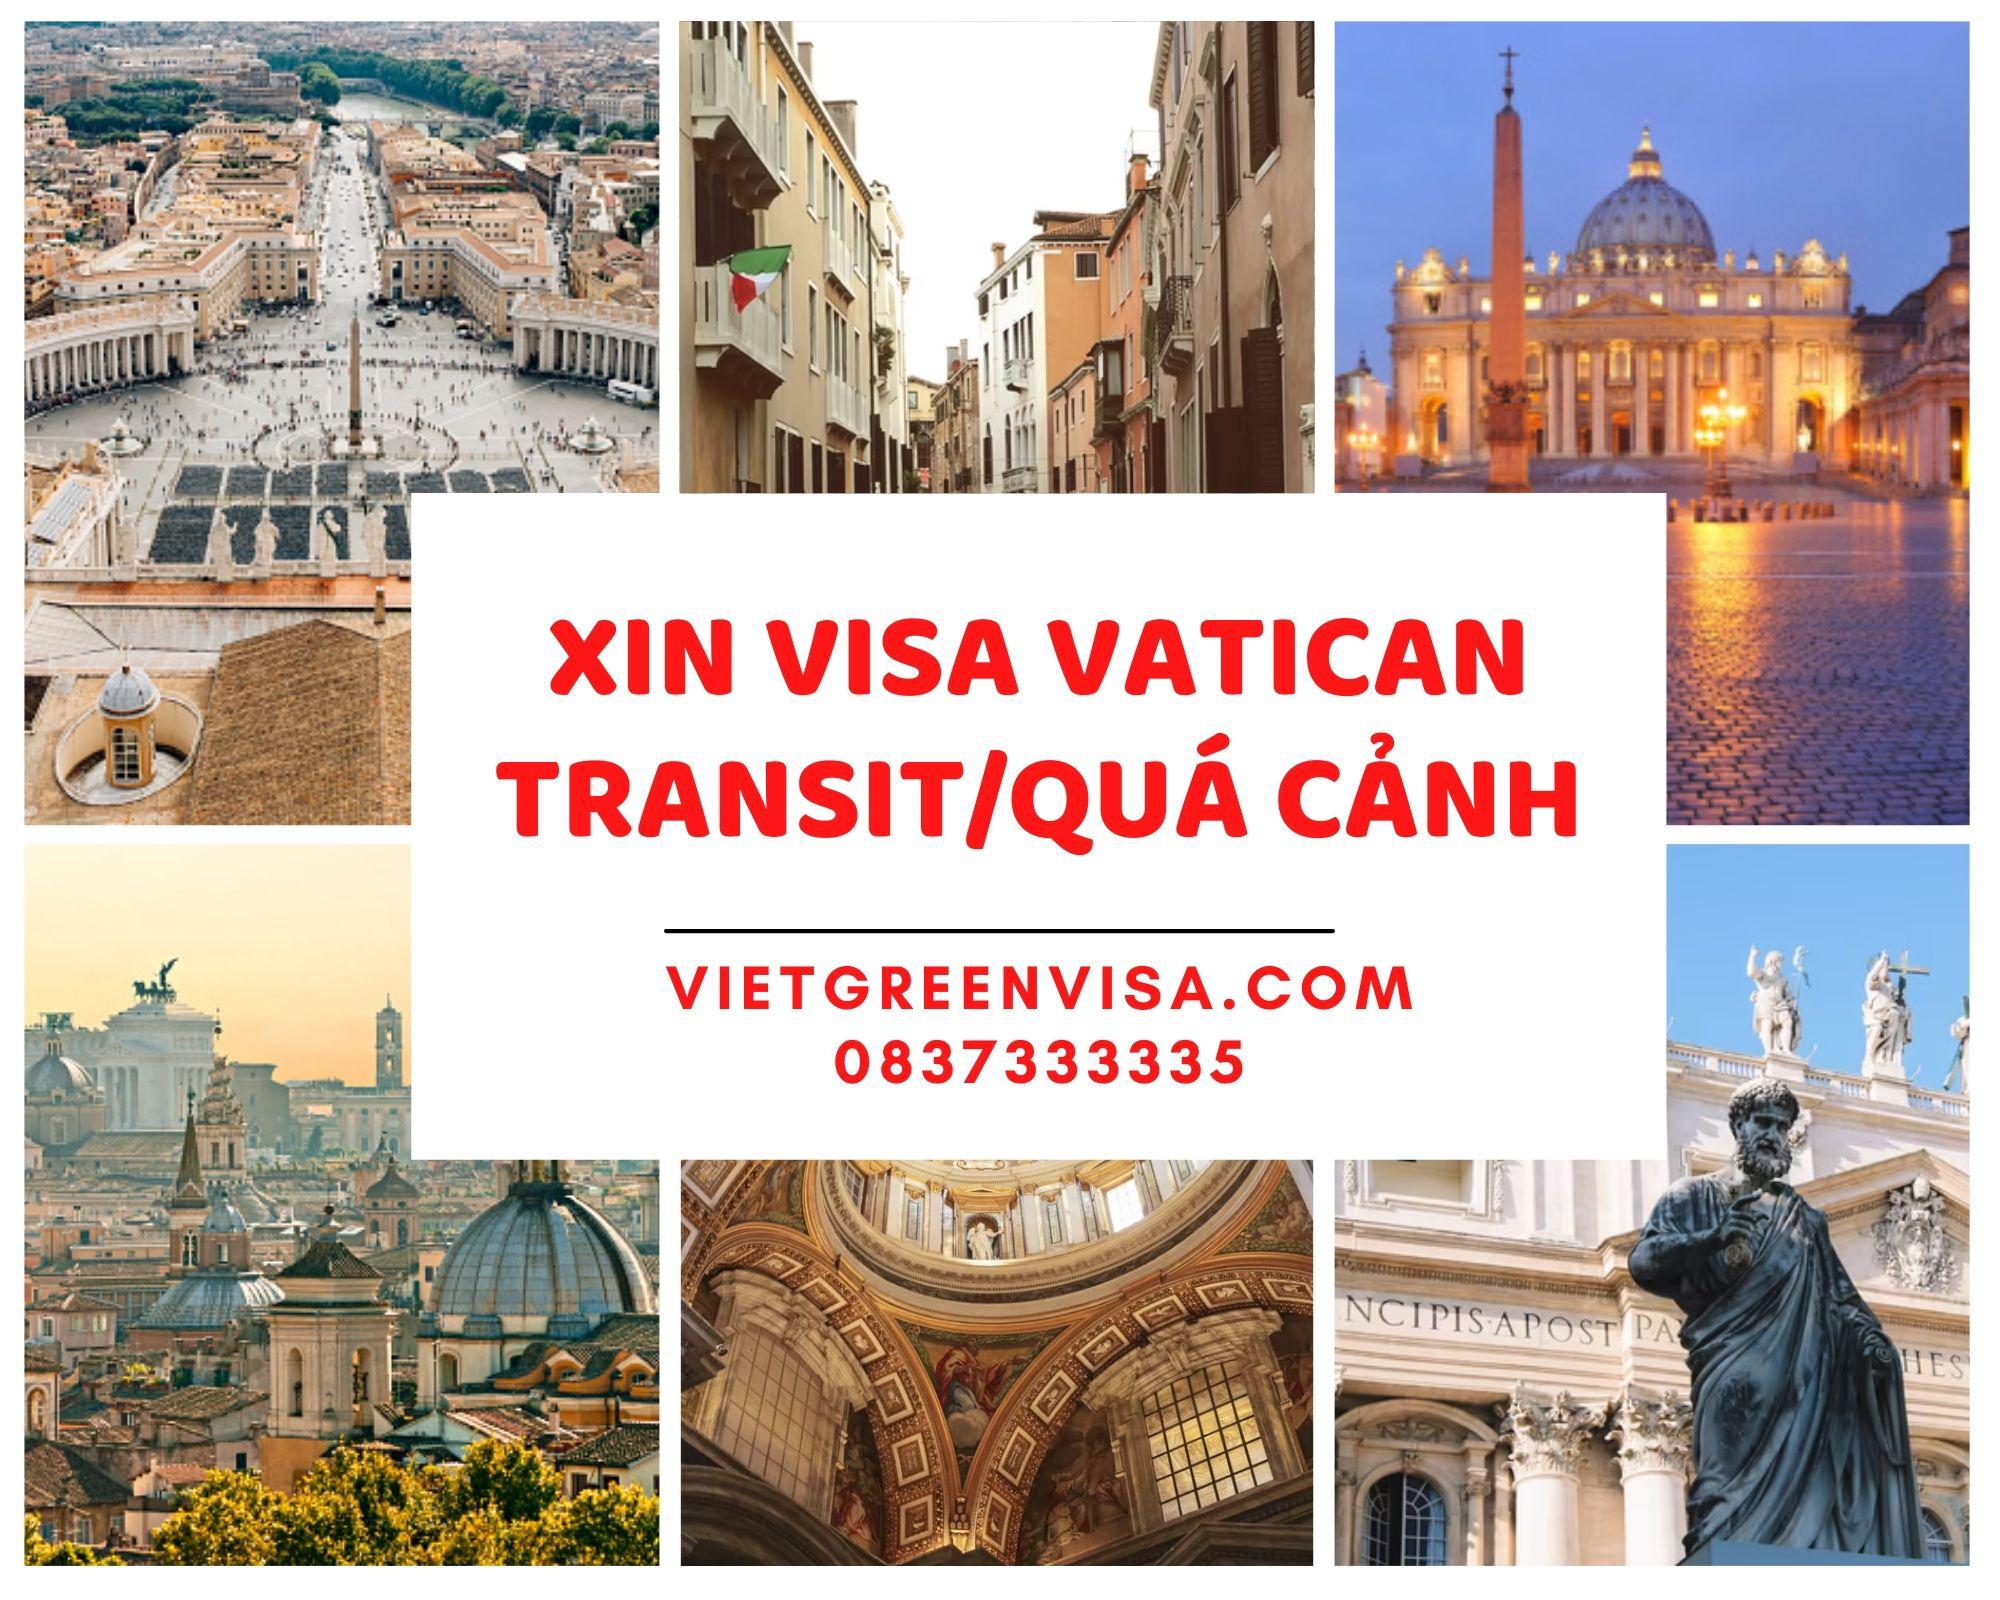 Làm visa quá cảnh qua thành Vatican visa Vatican transit uy tín